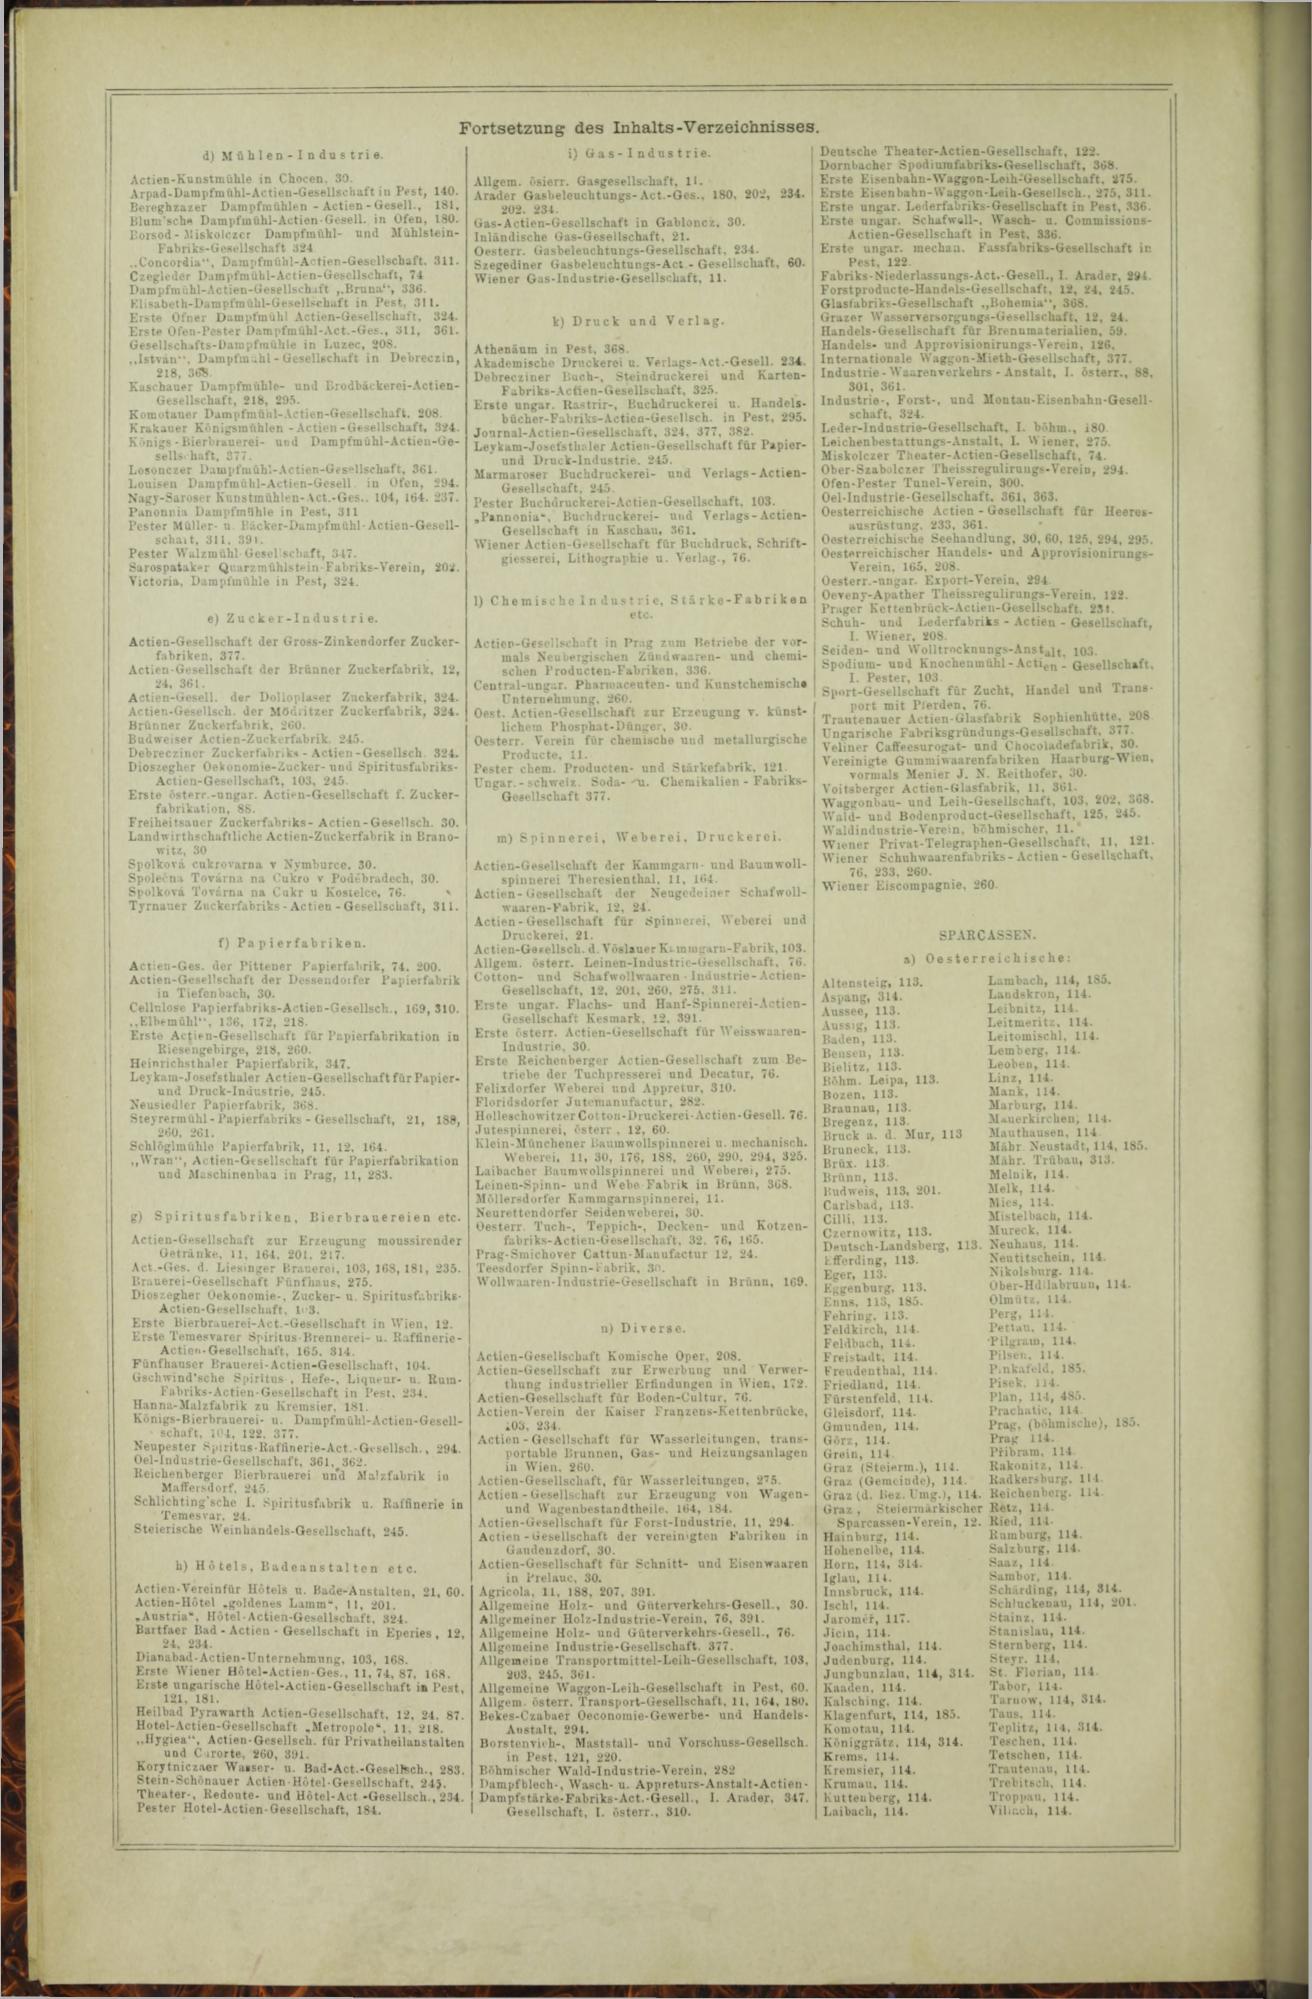 Der Tresor 23.04.1873 - Page 18